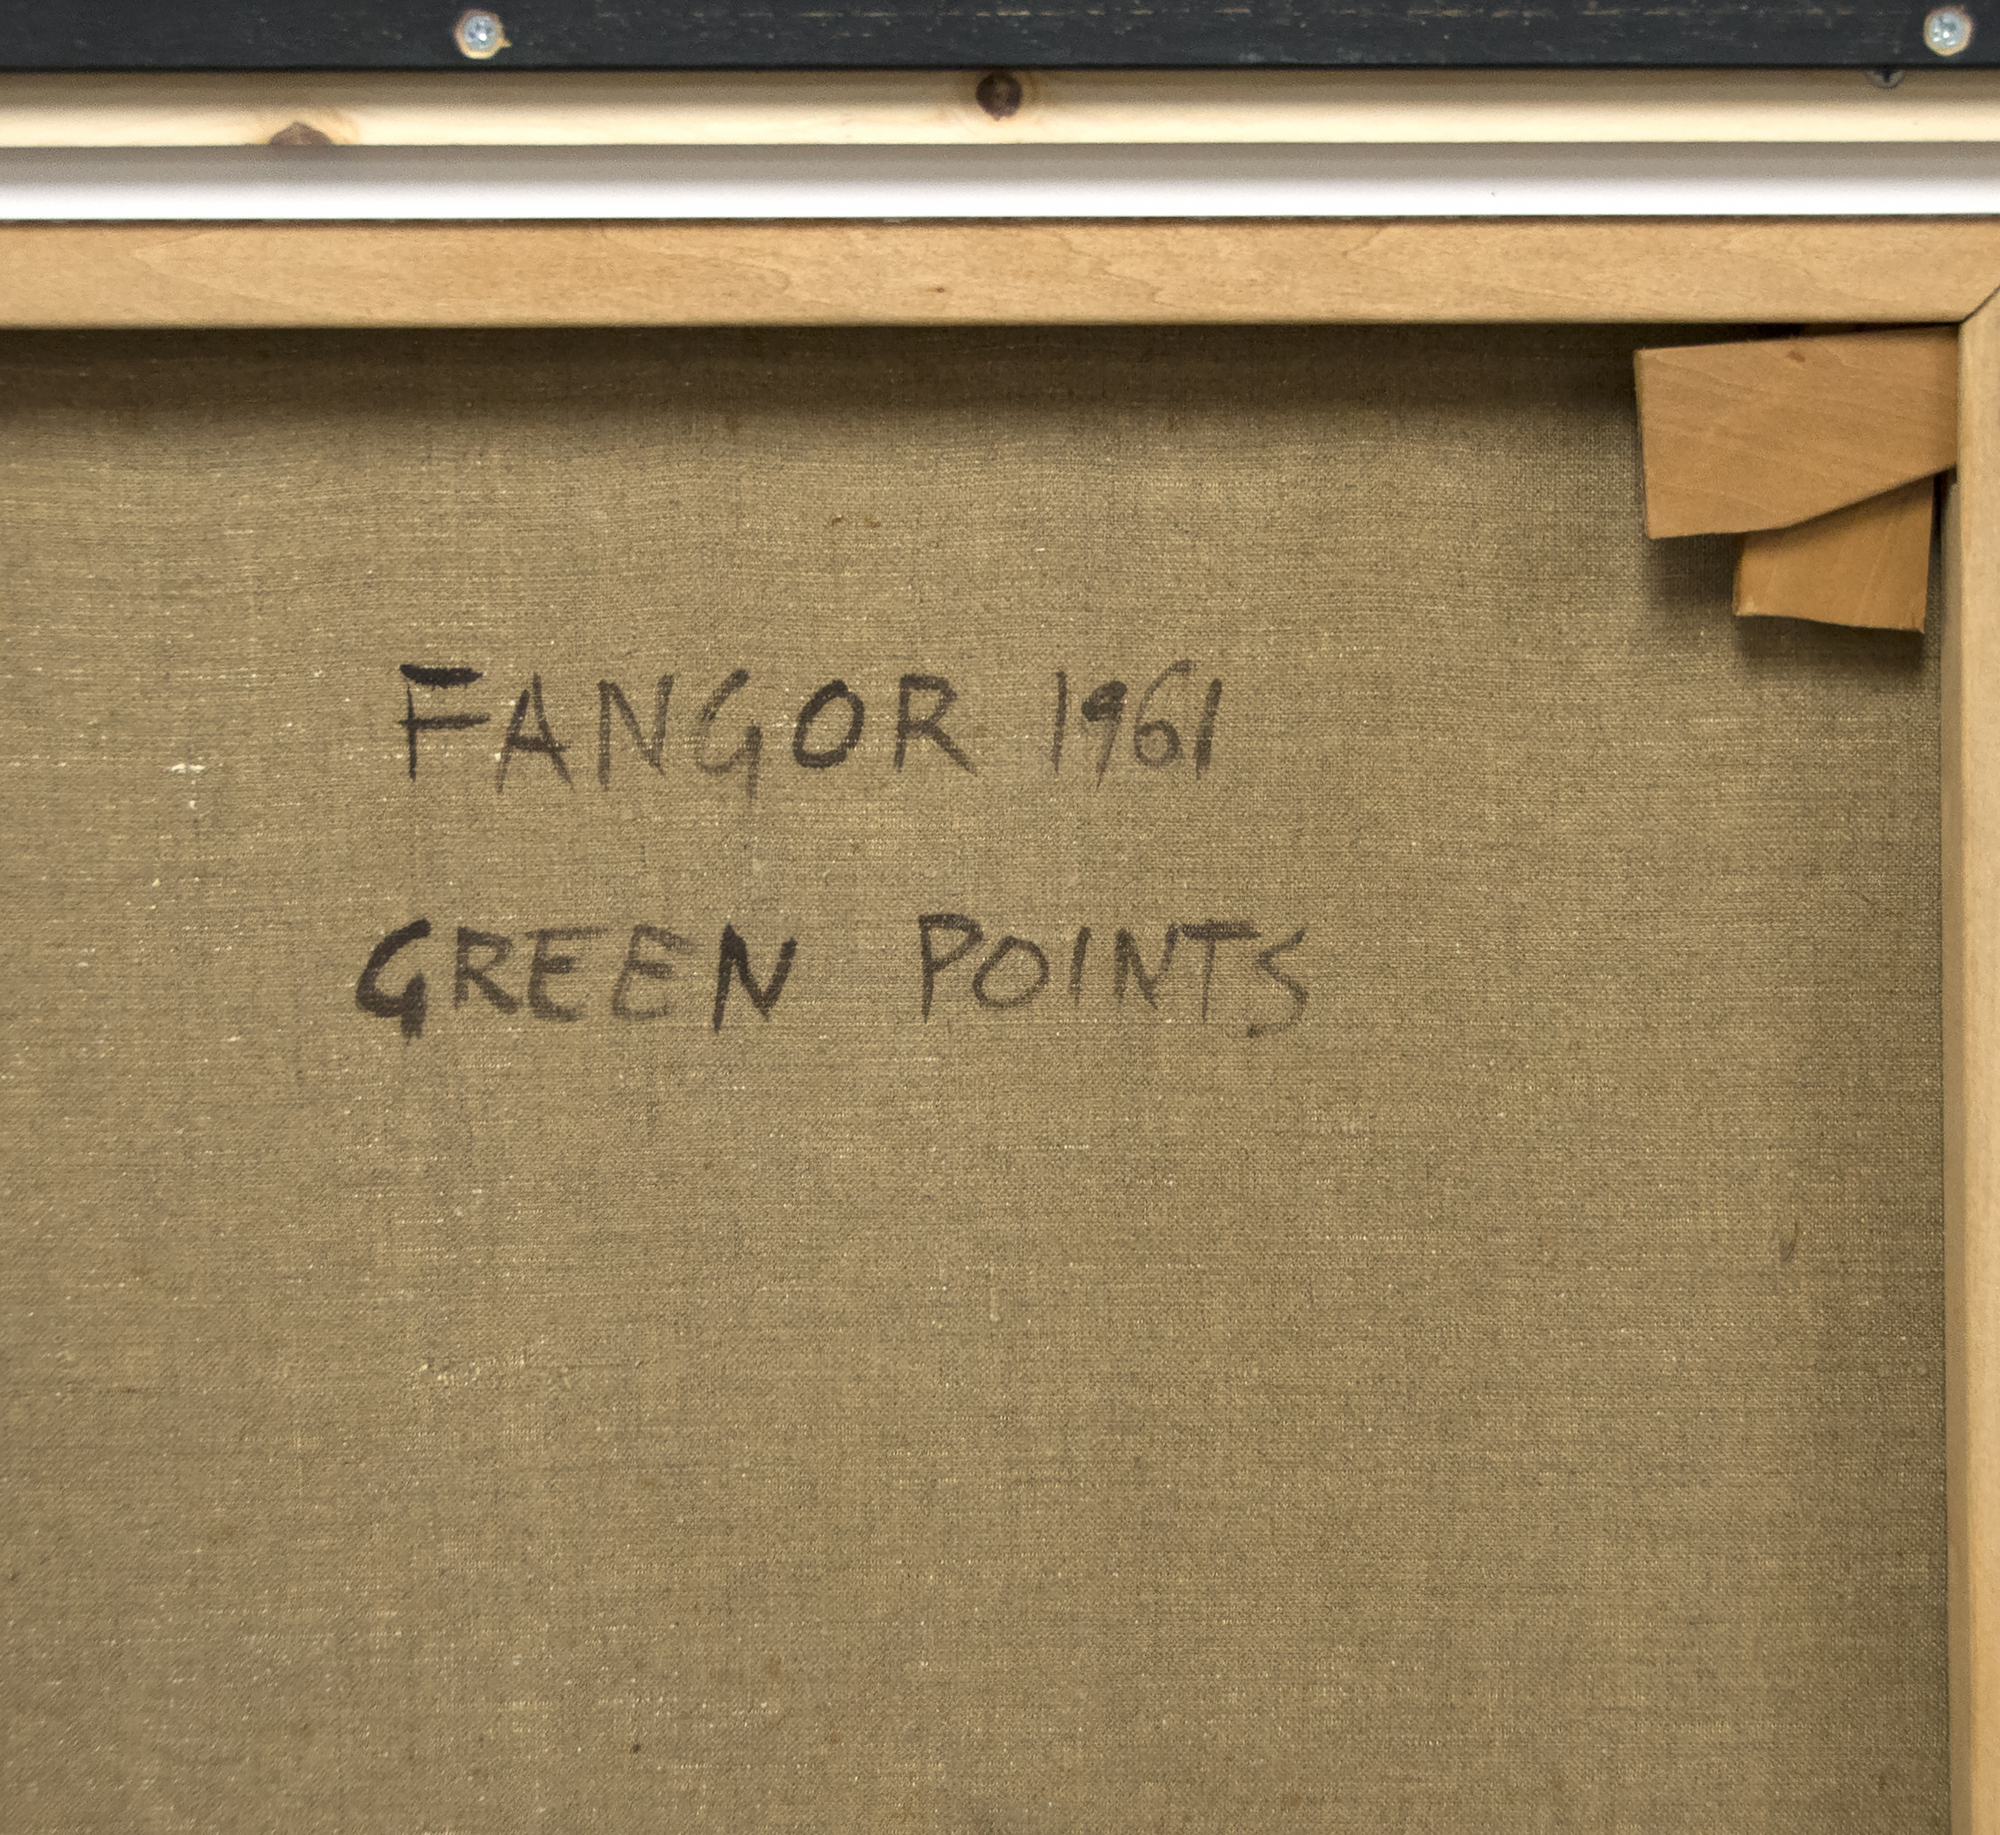 WOJCIECHファンゴール - グリーンポイント - キャンバスに油彩 - 52 7/8 x 33 1/2インチ。